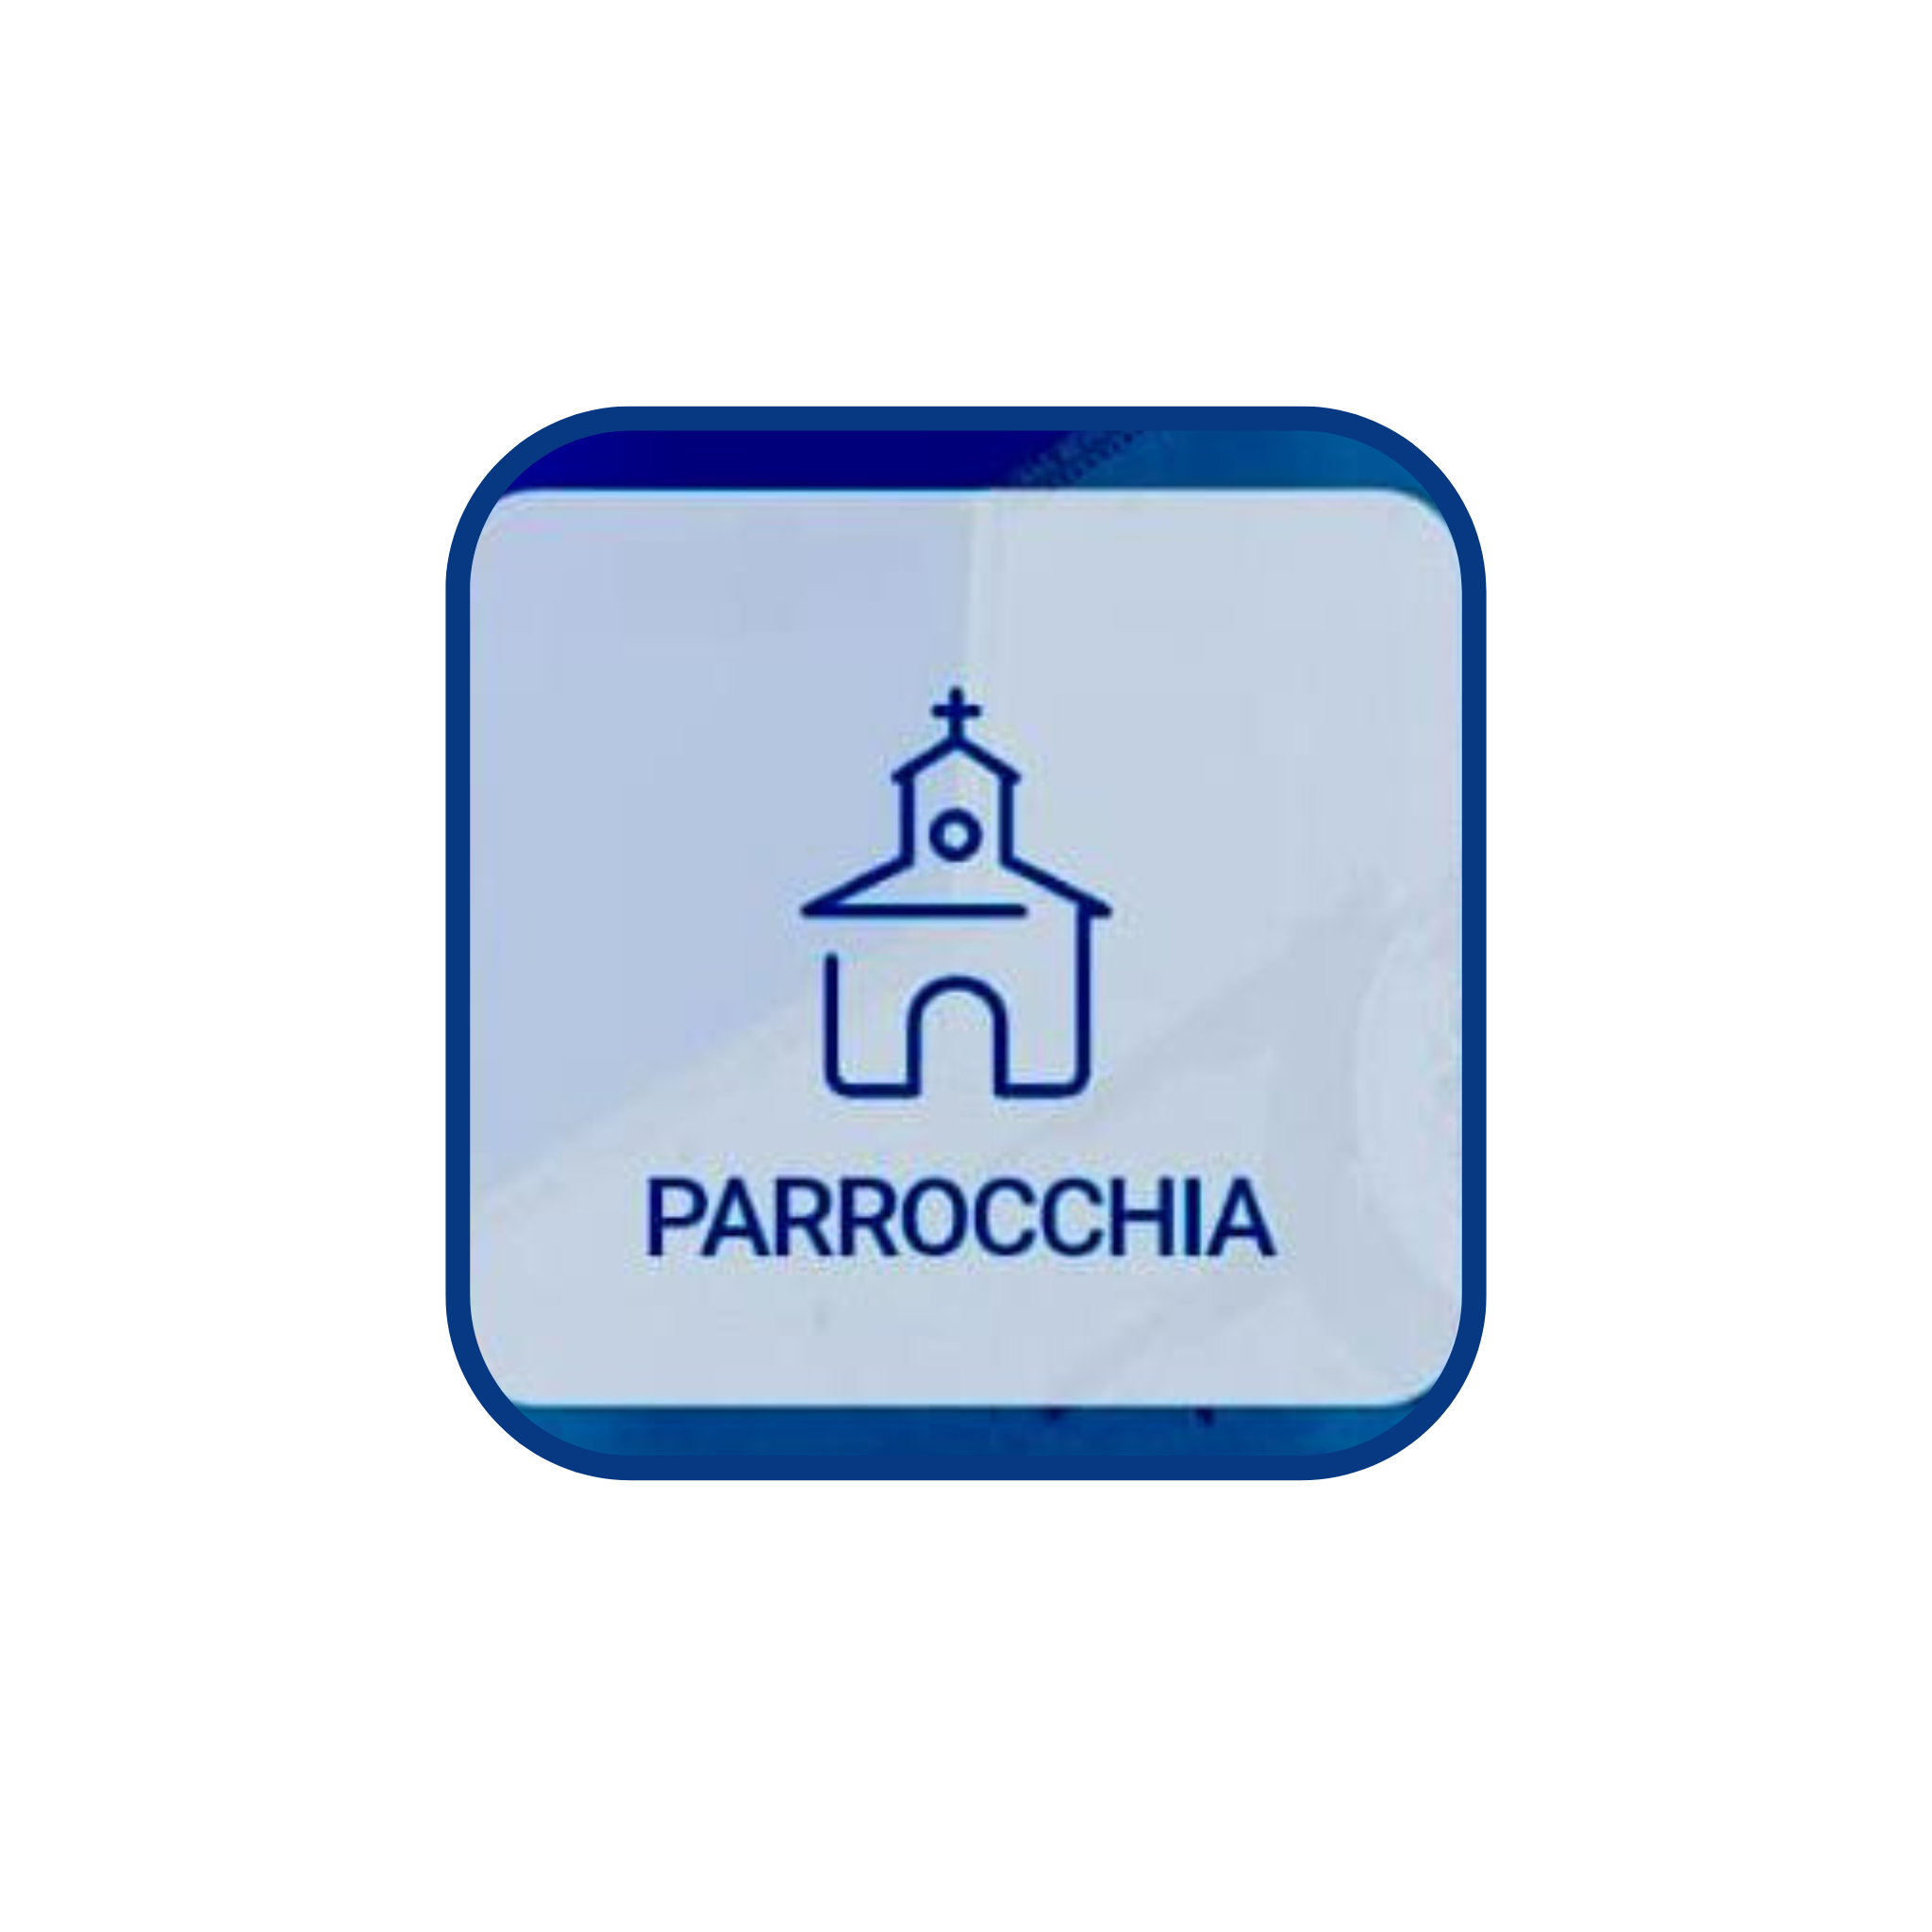 PARROCCHIA